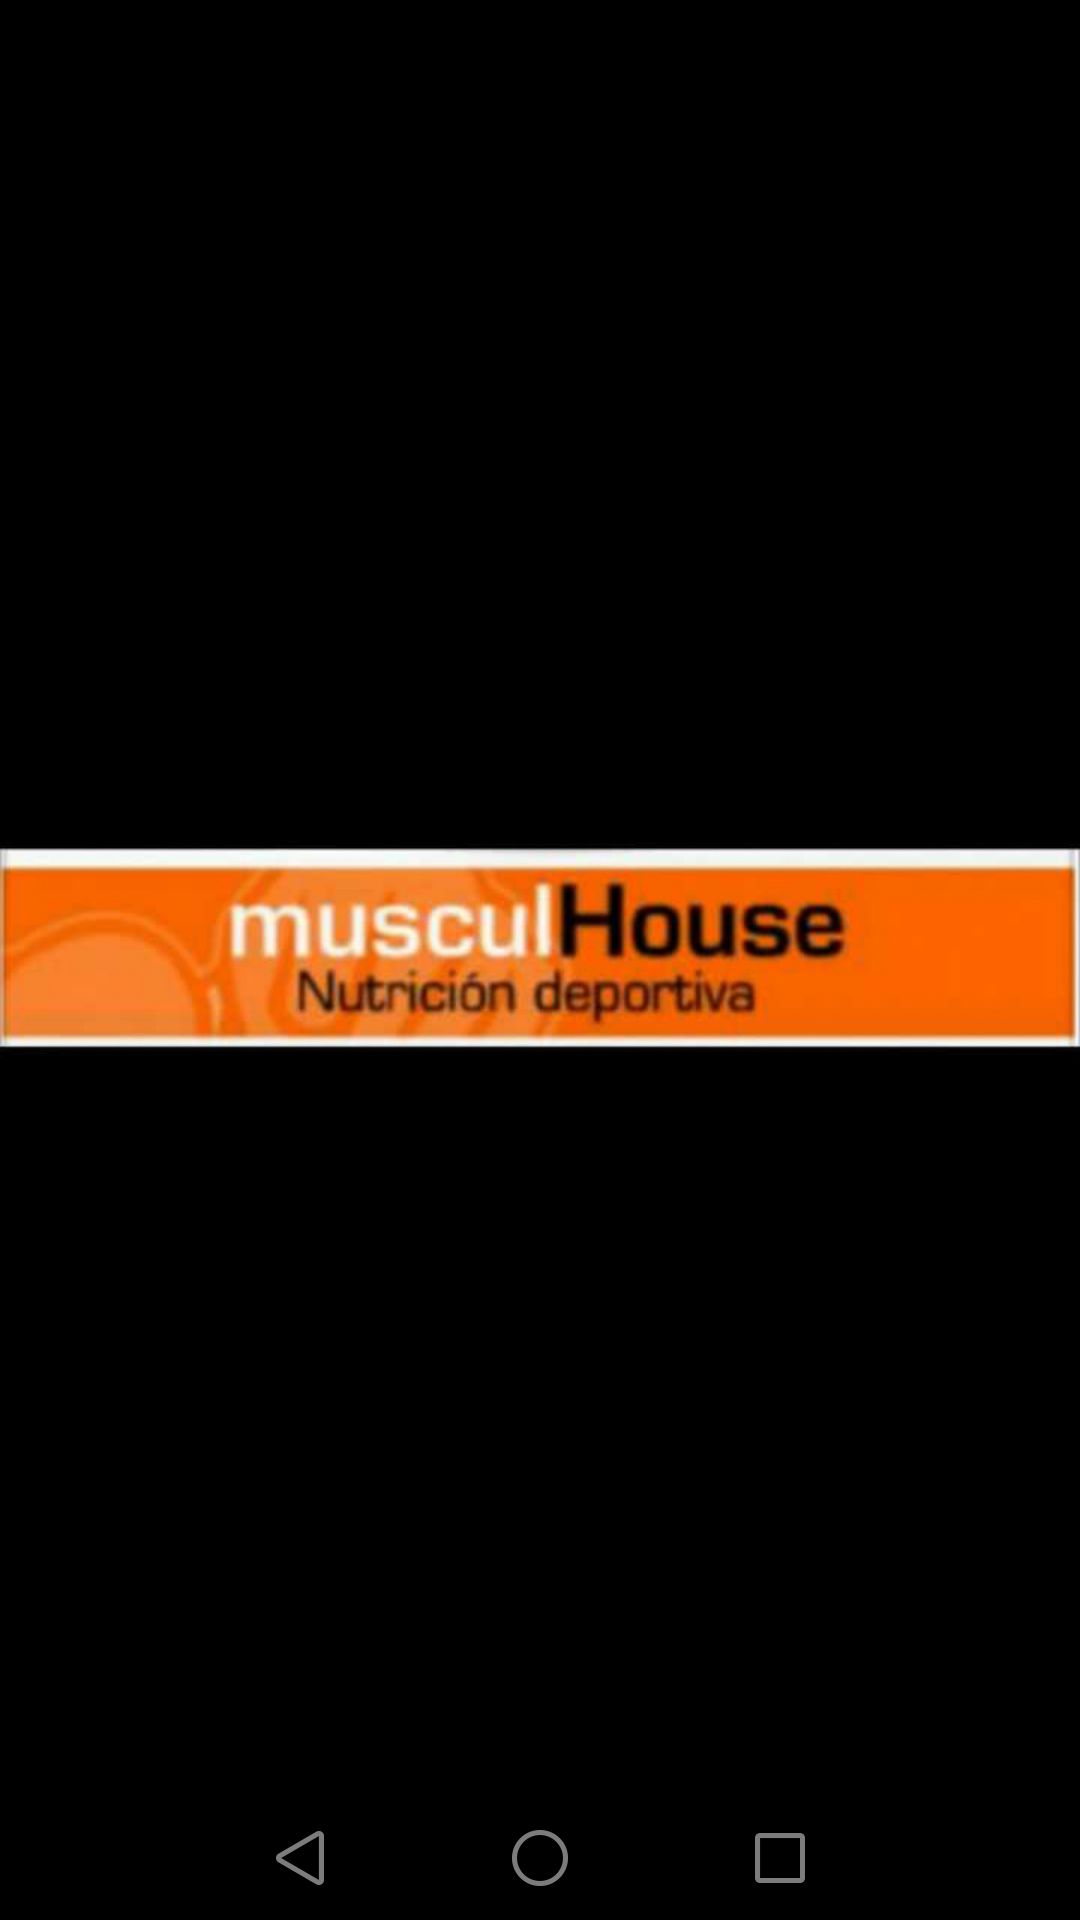 Musculhouse - Albal - Nutricionista